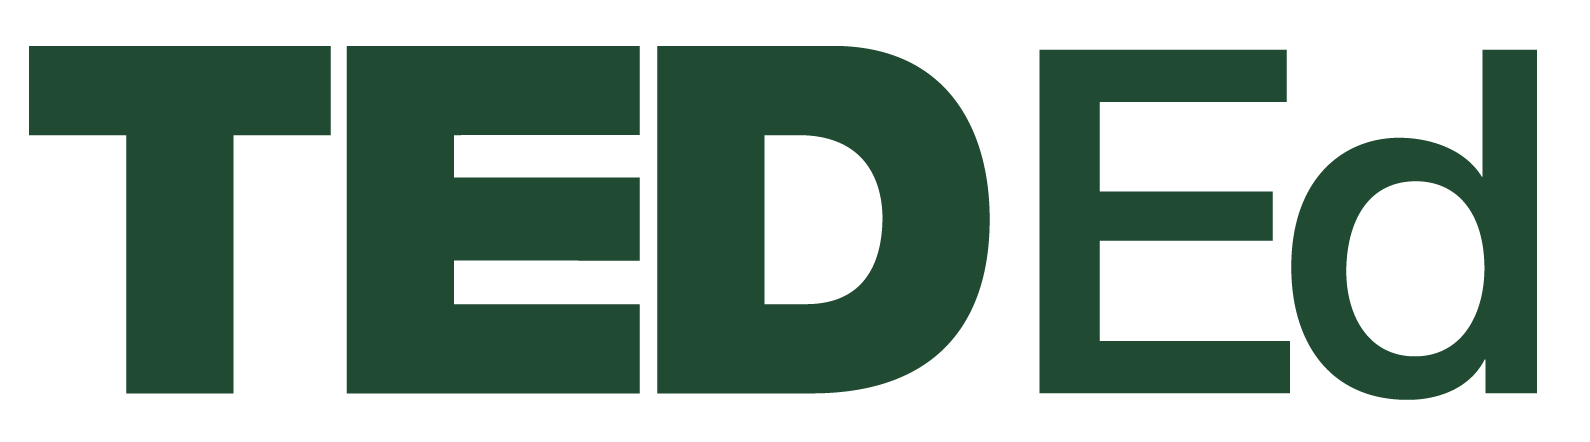 teded_logo